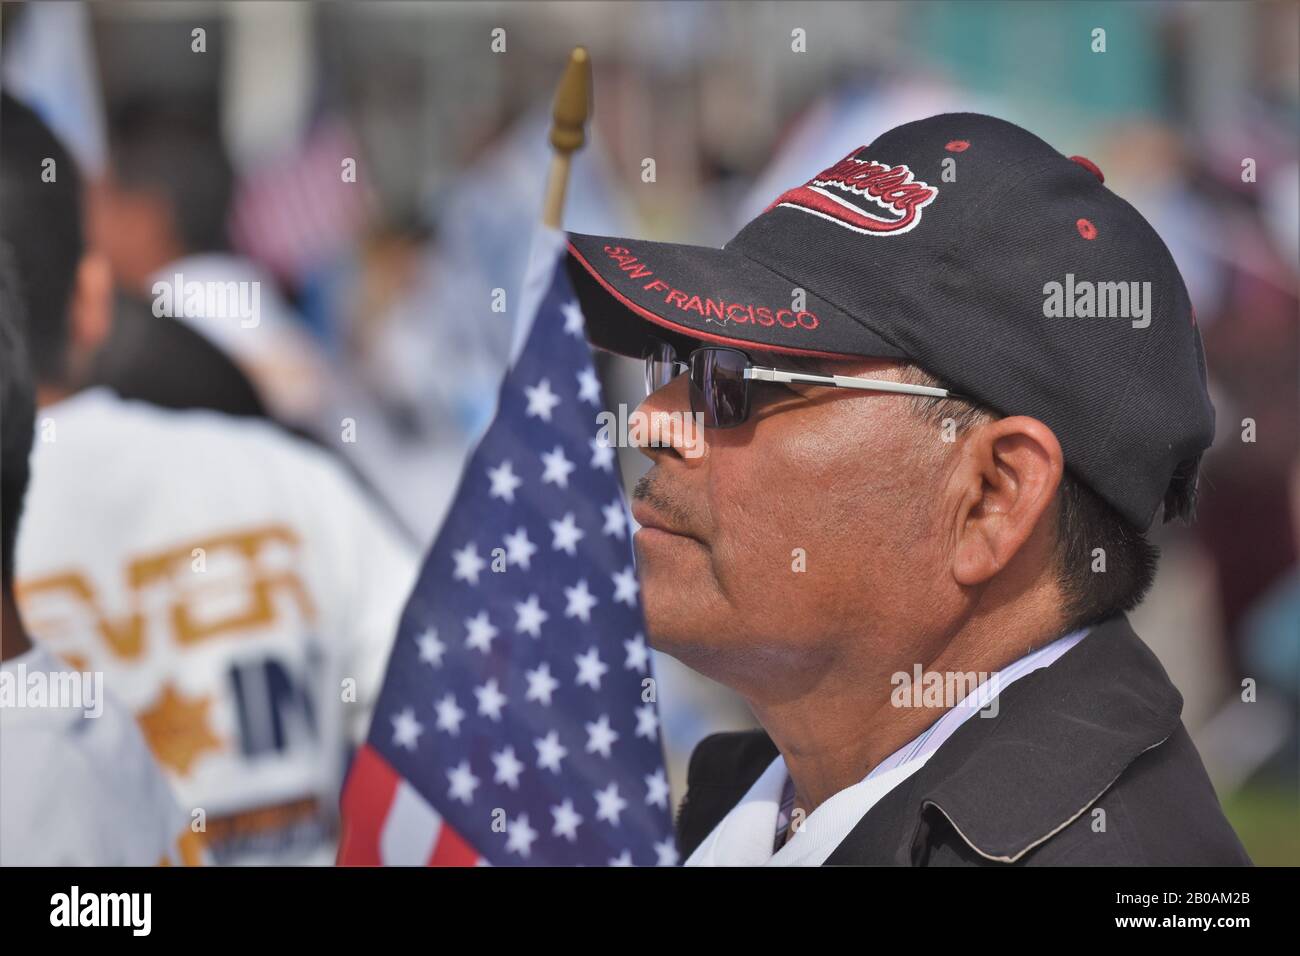 Senior Hispanic man with american flag and a San Francisco hat baseball cap at rally Stock Photo